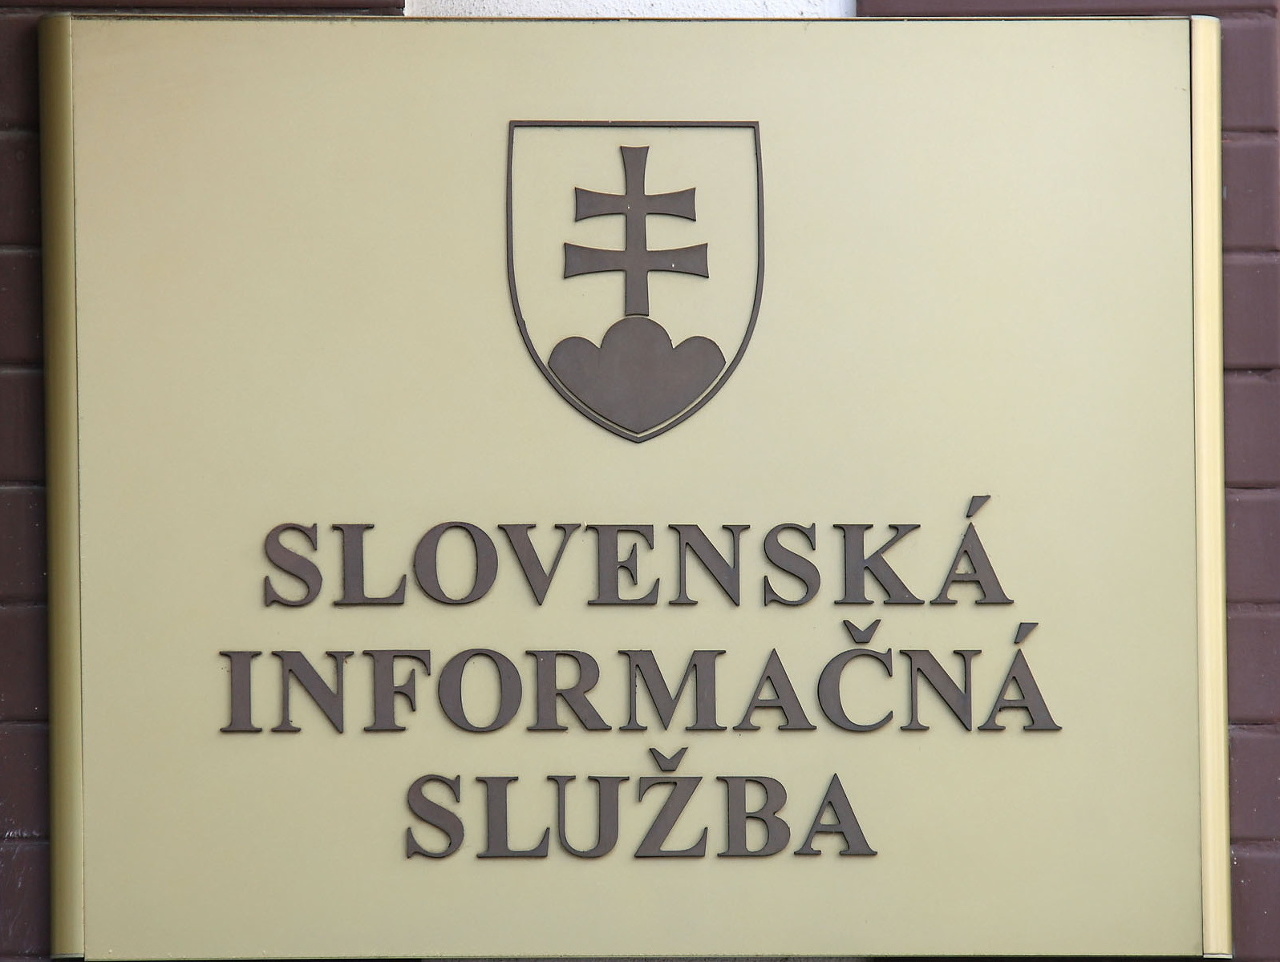 Slovenská informačná služba